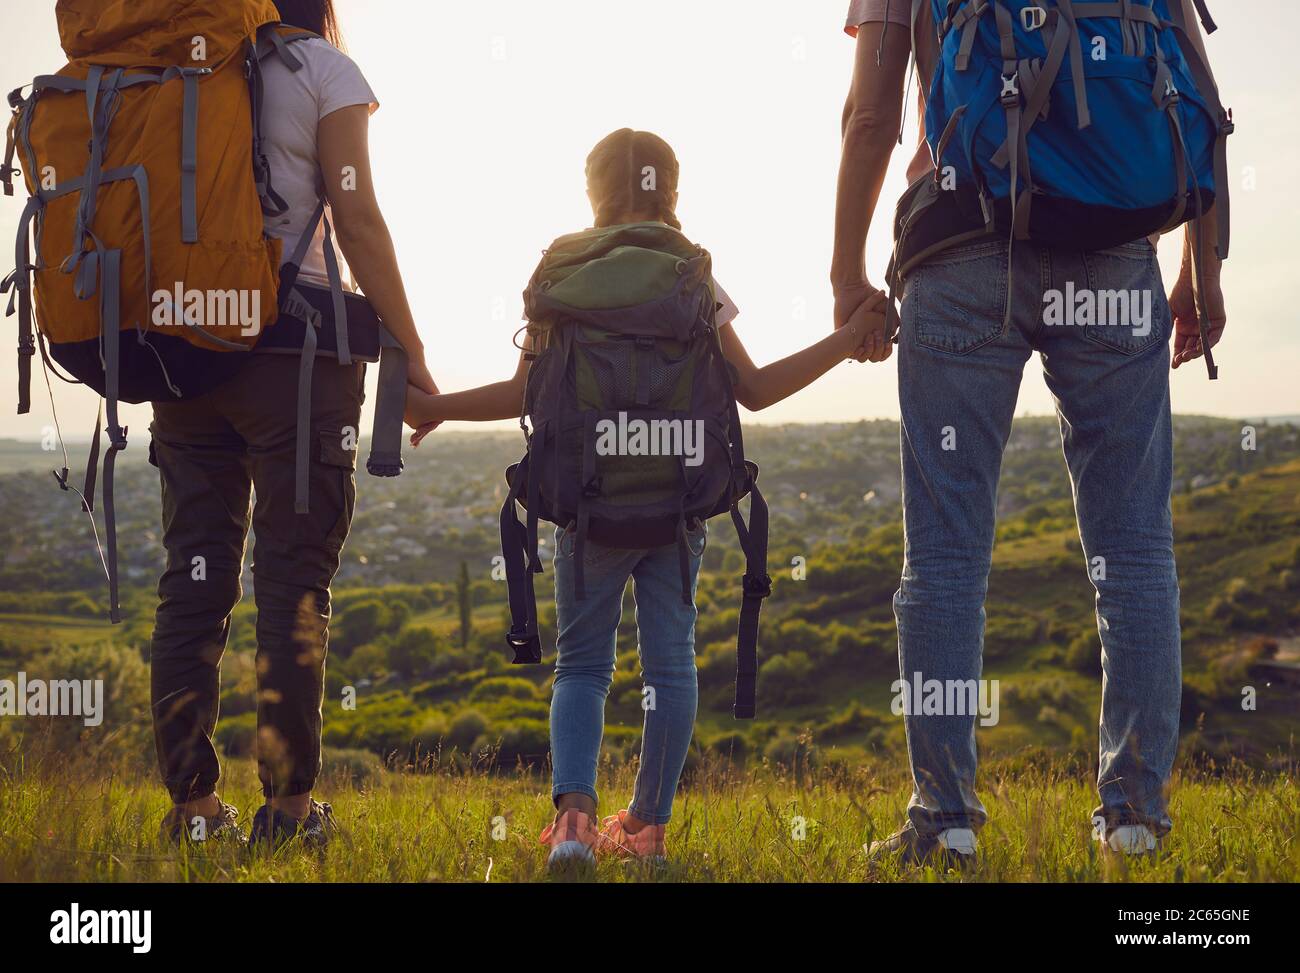 Famille heureuse avec des sacs à dos sur la nature au coucher du soleil. Randonnée pédestre concept de tourisme familial. Vue arrière. Banque D'Images